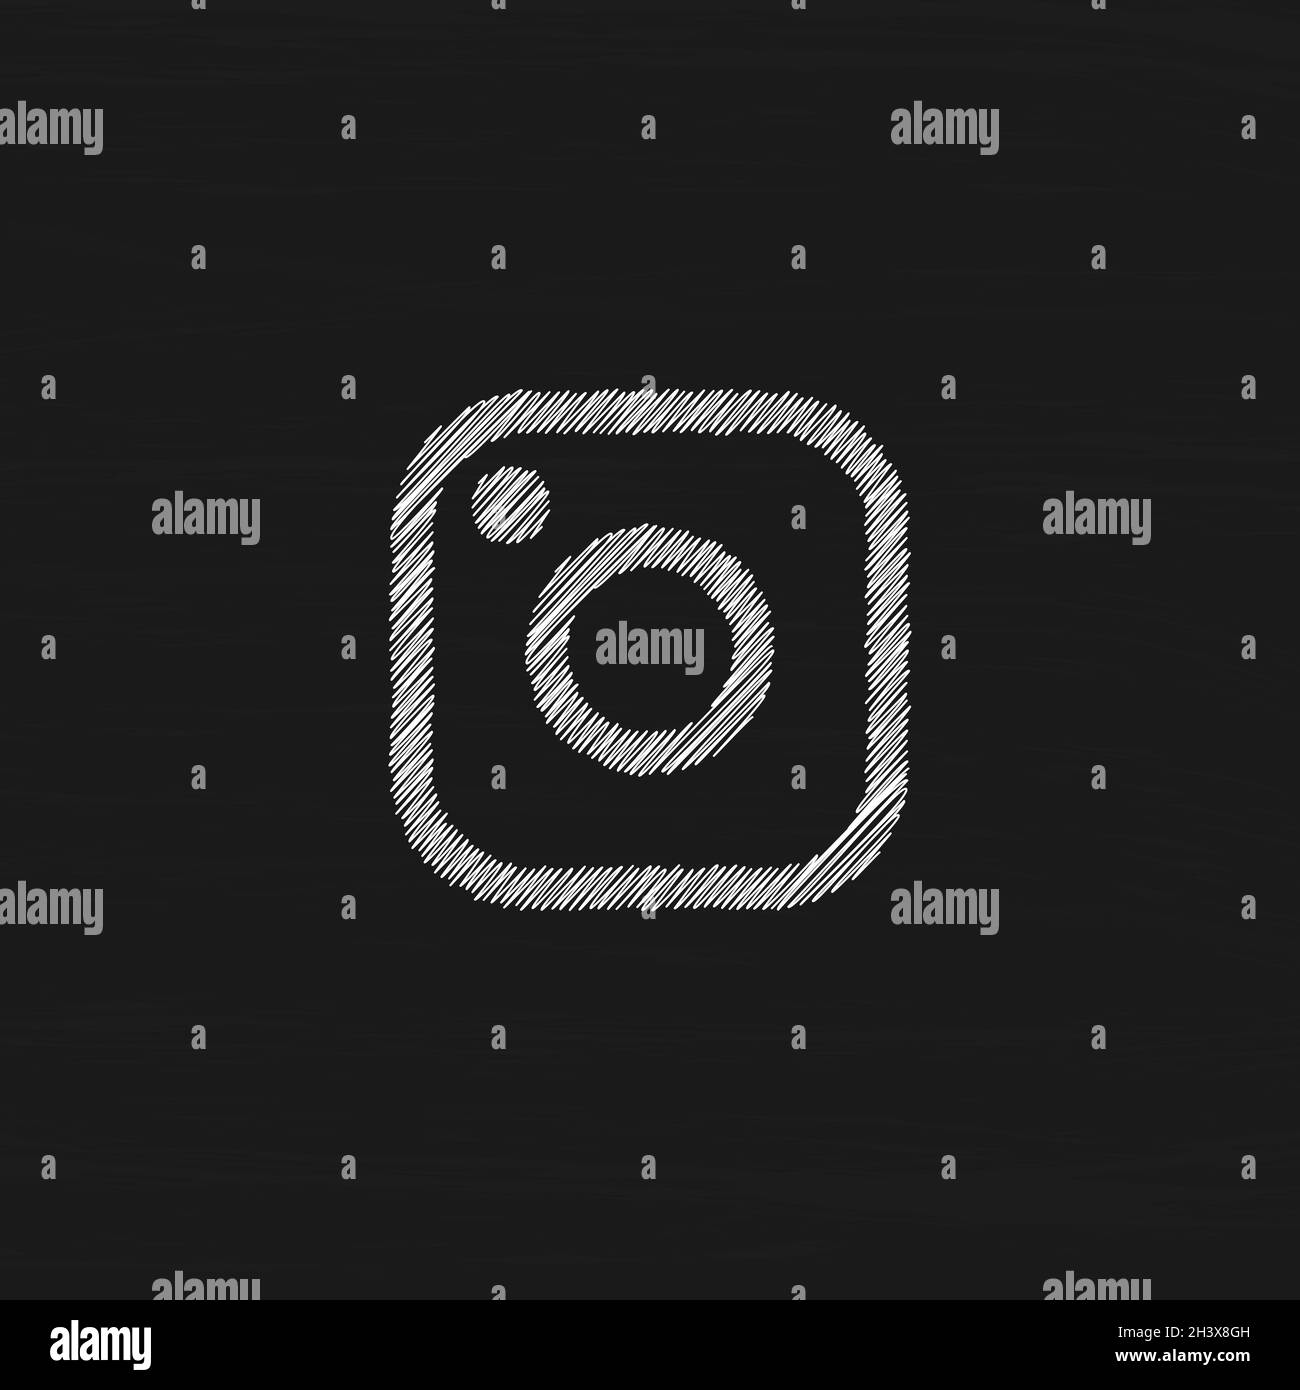 Simple Camera icon. Instagram social media logo vector Stock Vector